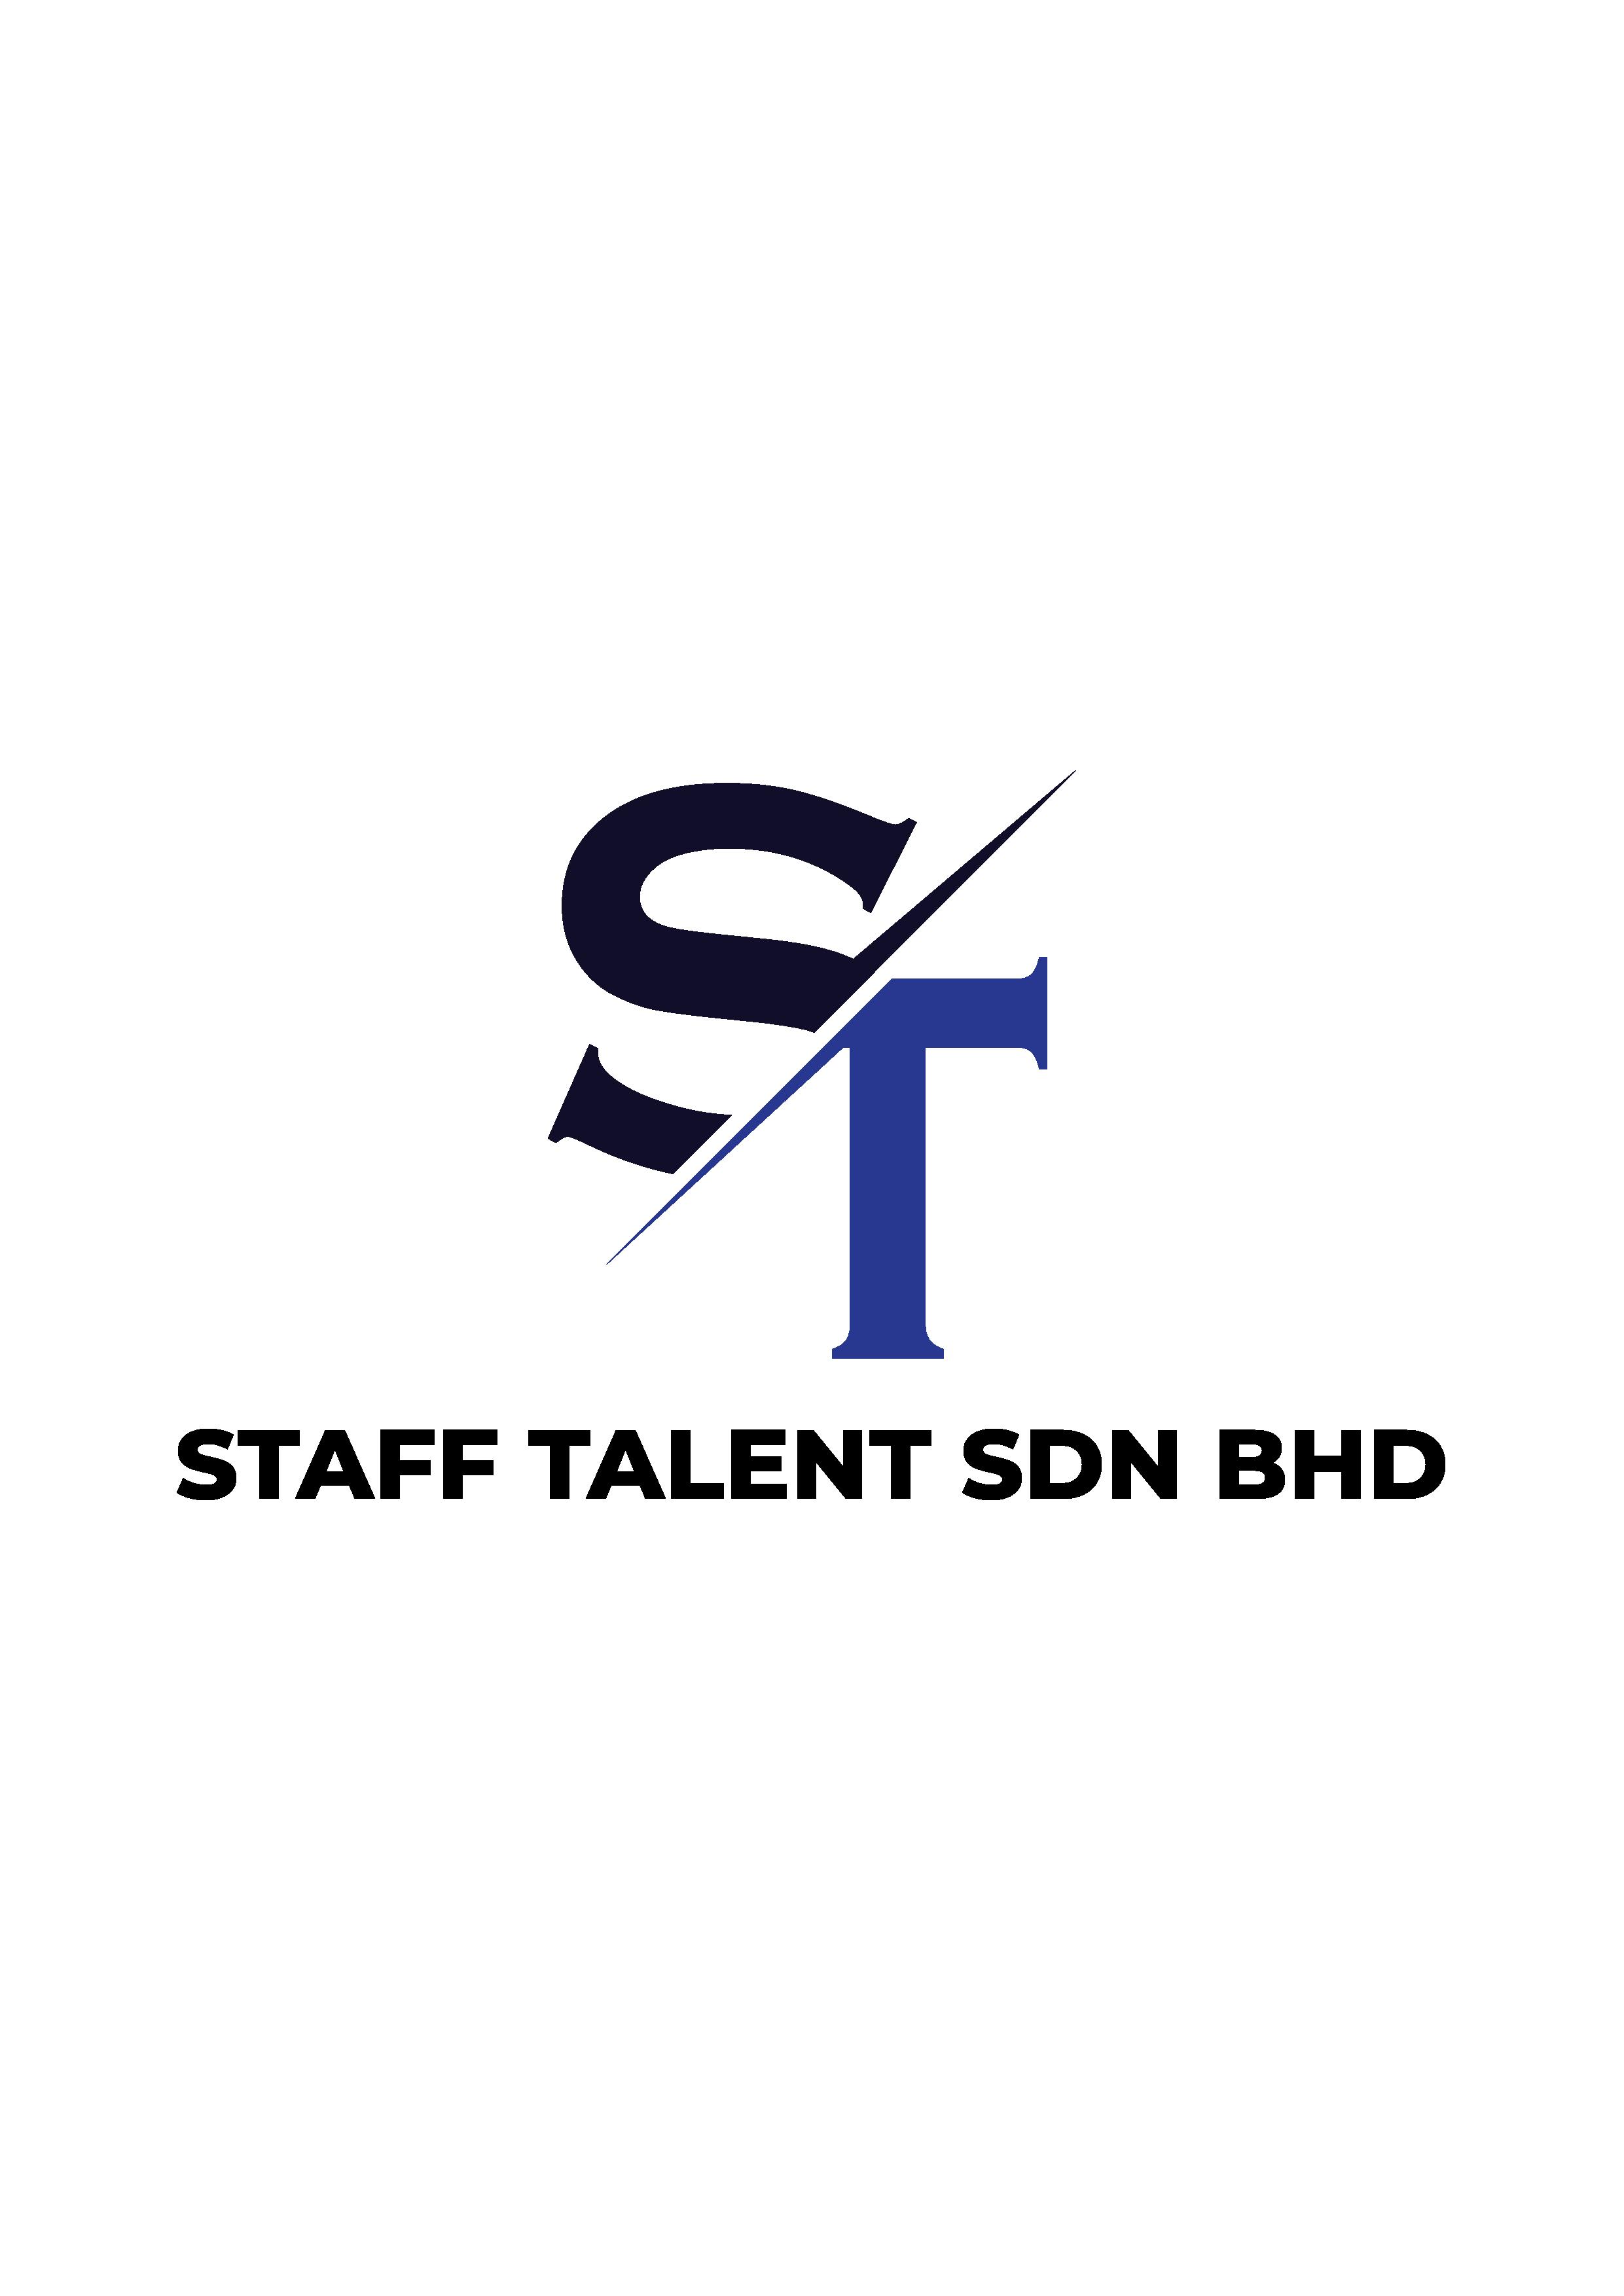 STAFF TALENT SDN BHD